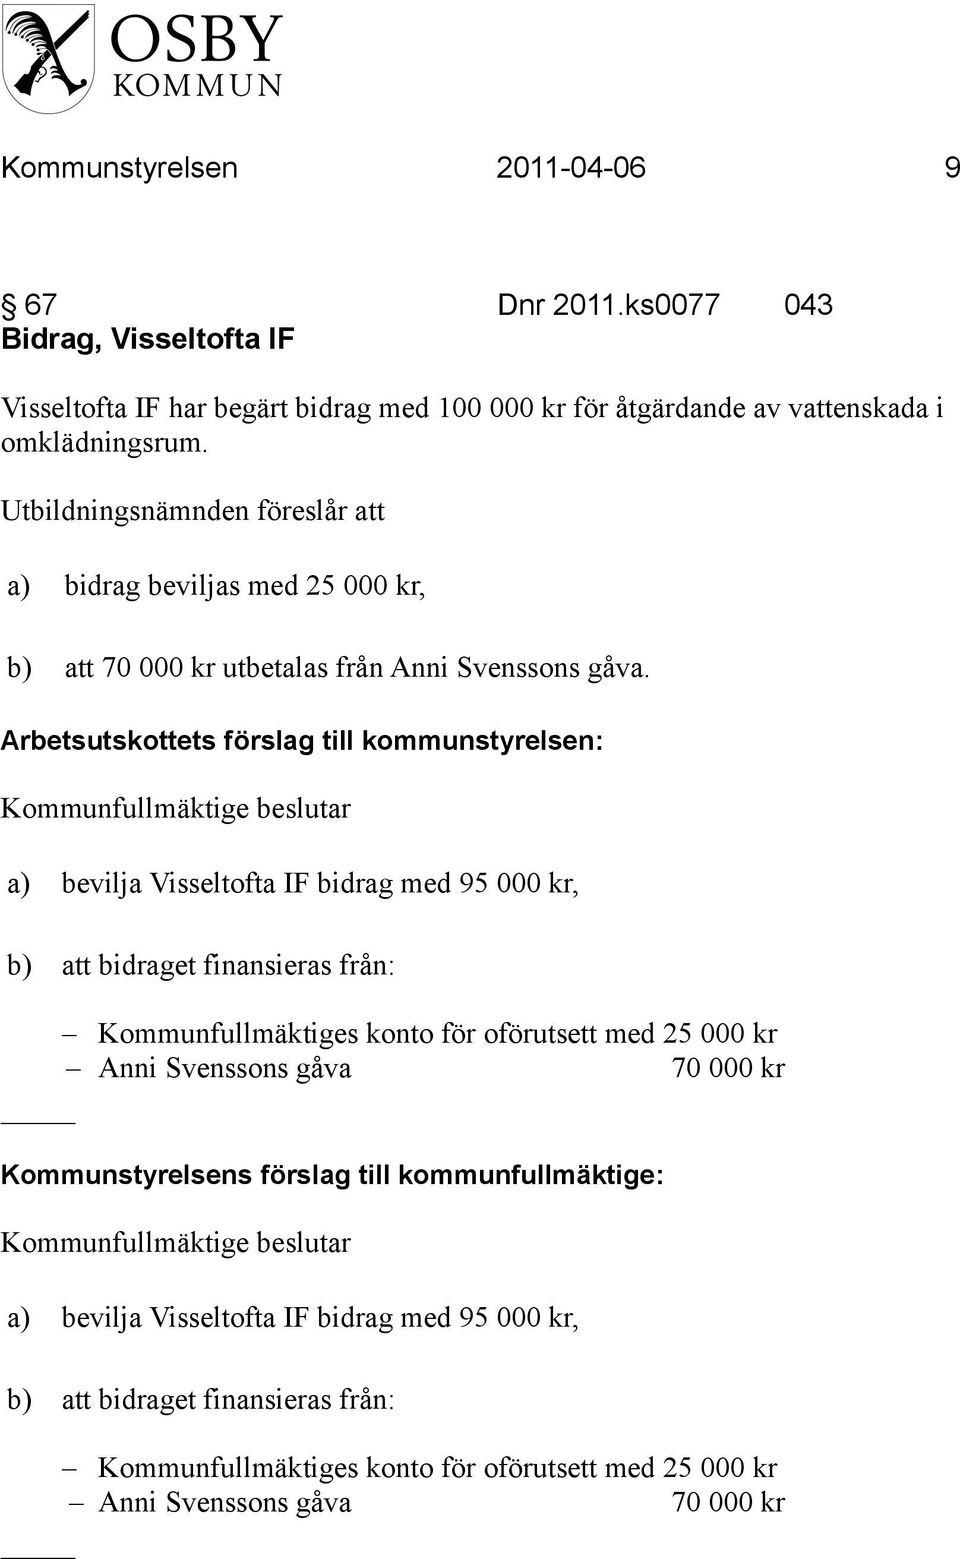 Kommunfullmäktige beslutar a) bevilja Visseltofta IF bidrag med 95 000 kr, b) att bidraget finansieras från: Kommunfullmäktiges konto för oförutsett med 25 000 kr Anni Svenssons